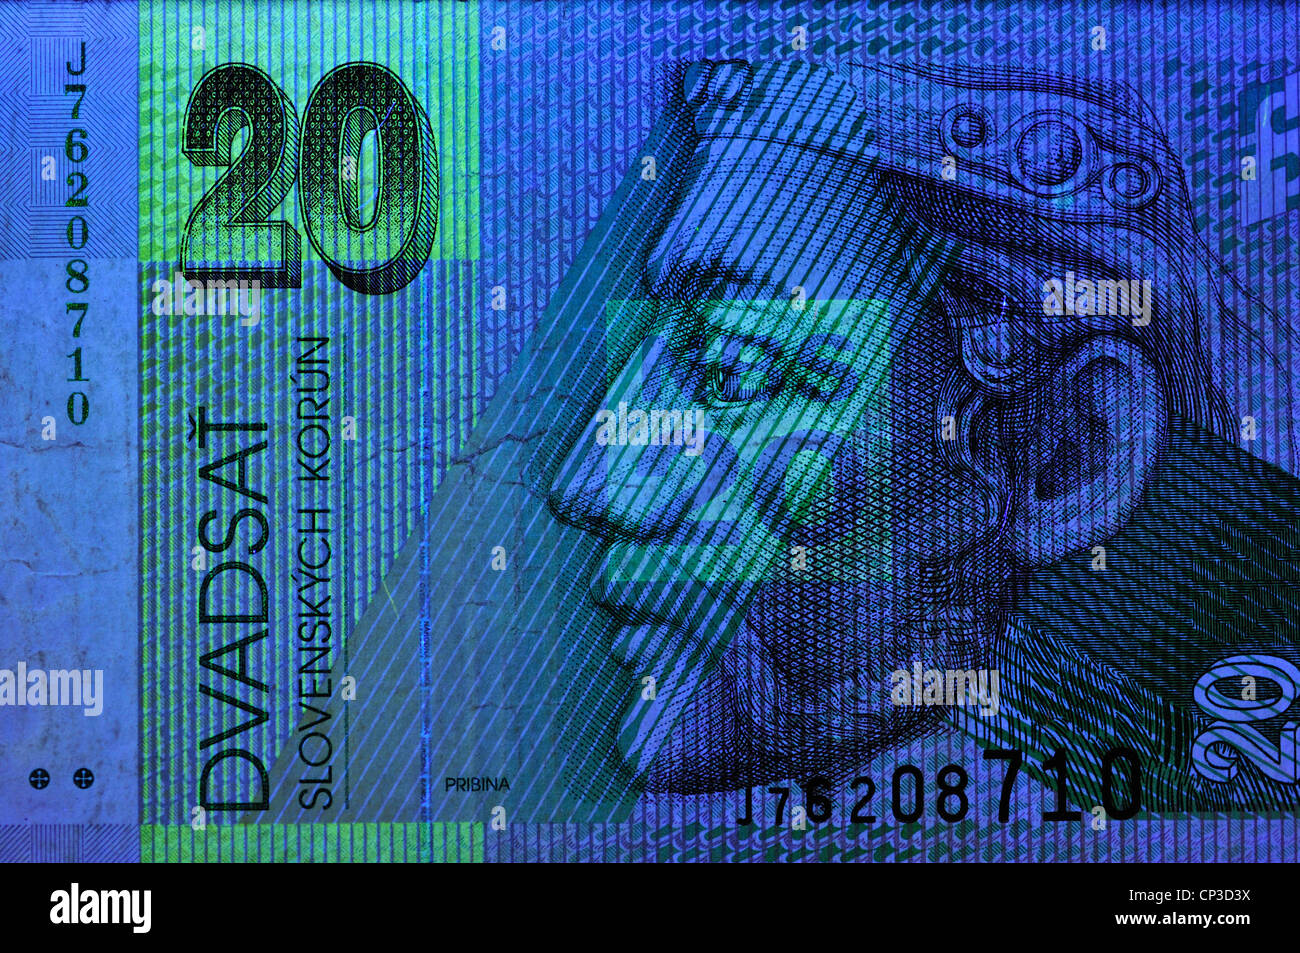 Billet de banque sous la lumière ultraviolette montrant les éléments de sécurité invisibles dans la lumière normale. 20 Crown / Korun remarque ; Slovaquie Banque D'Images